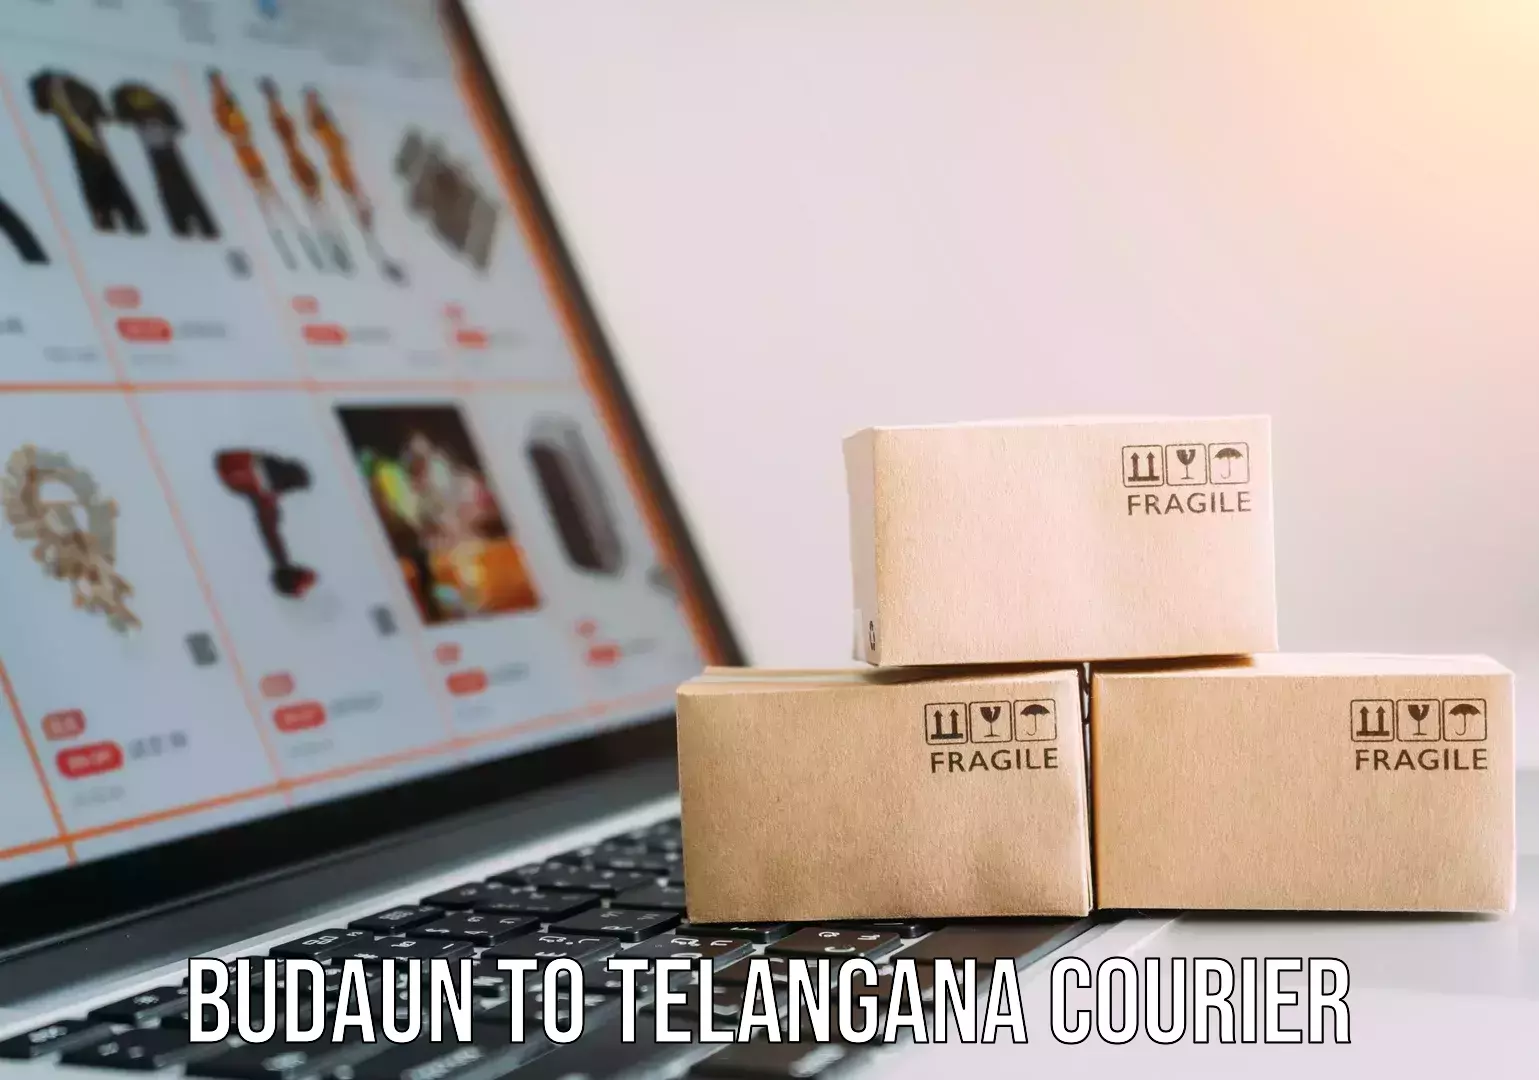 Digital courier platforms in Budaun to Telangana